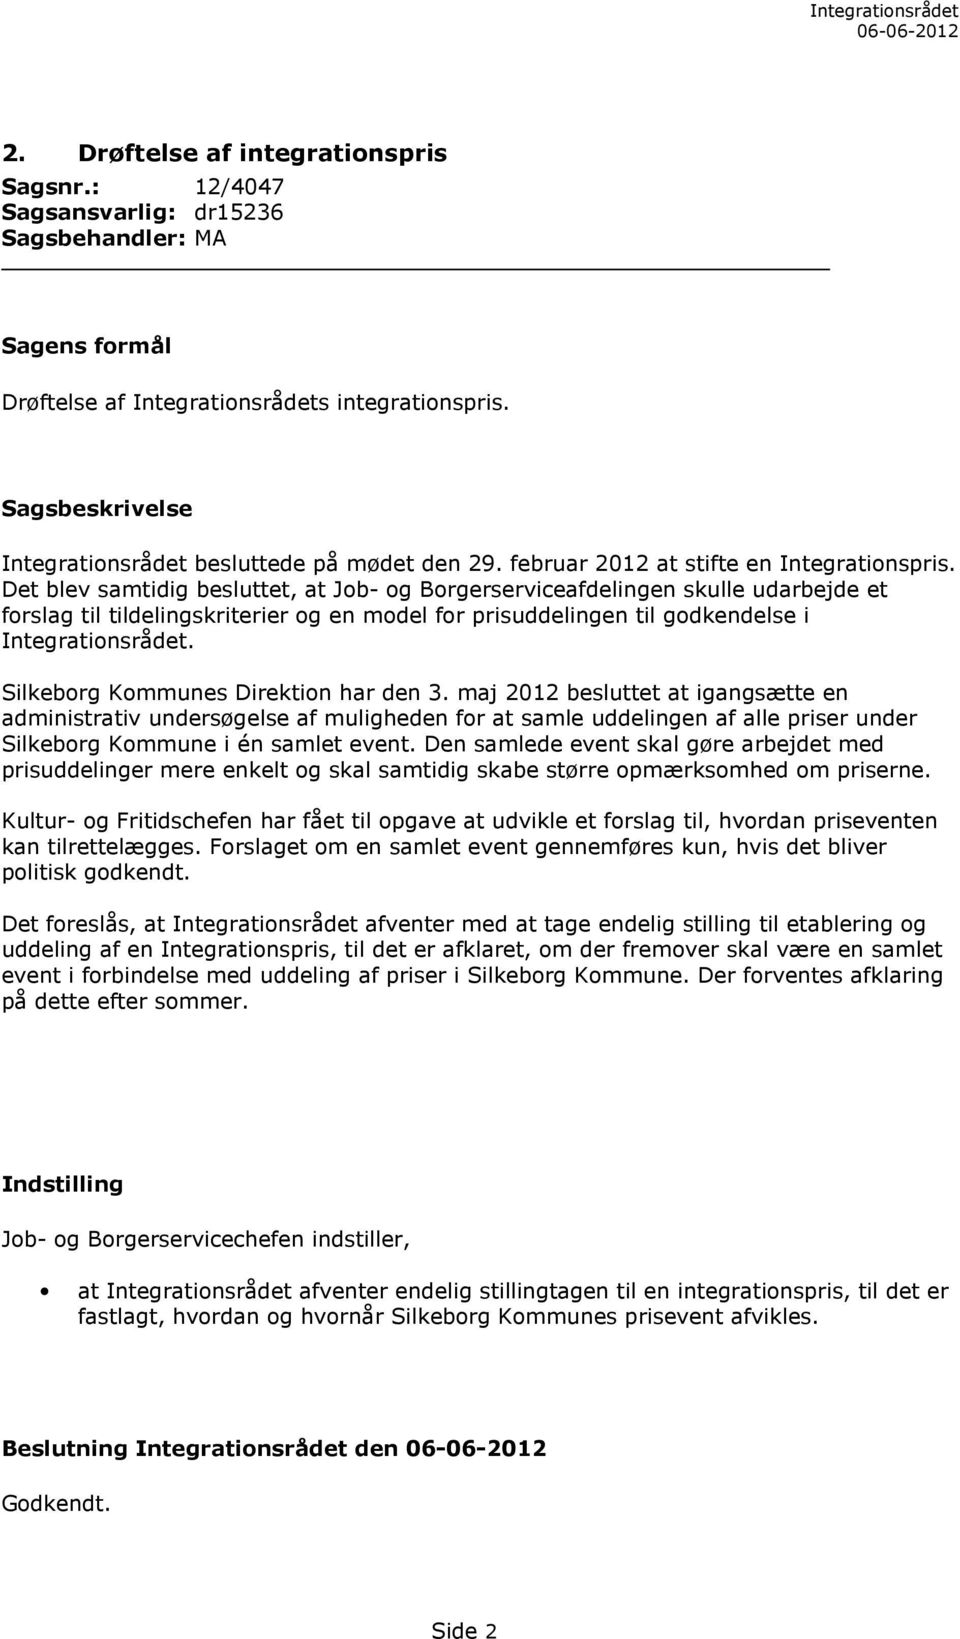 Silkeborg Kommunes Direktion har den 3. maj 2012 besluttet at igangsætte en administrativ undersøgelse af muligheden for at samle uddelingen af alle priser under Silkeborg Kommune i én samlet event.